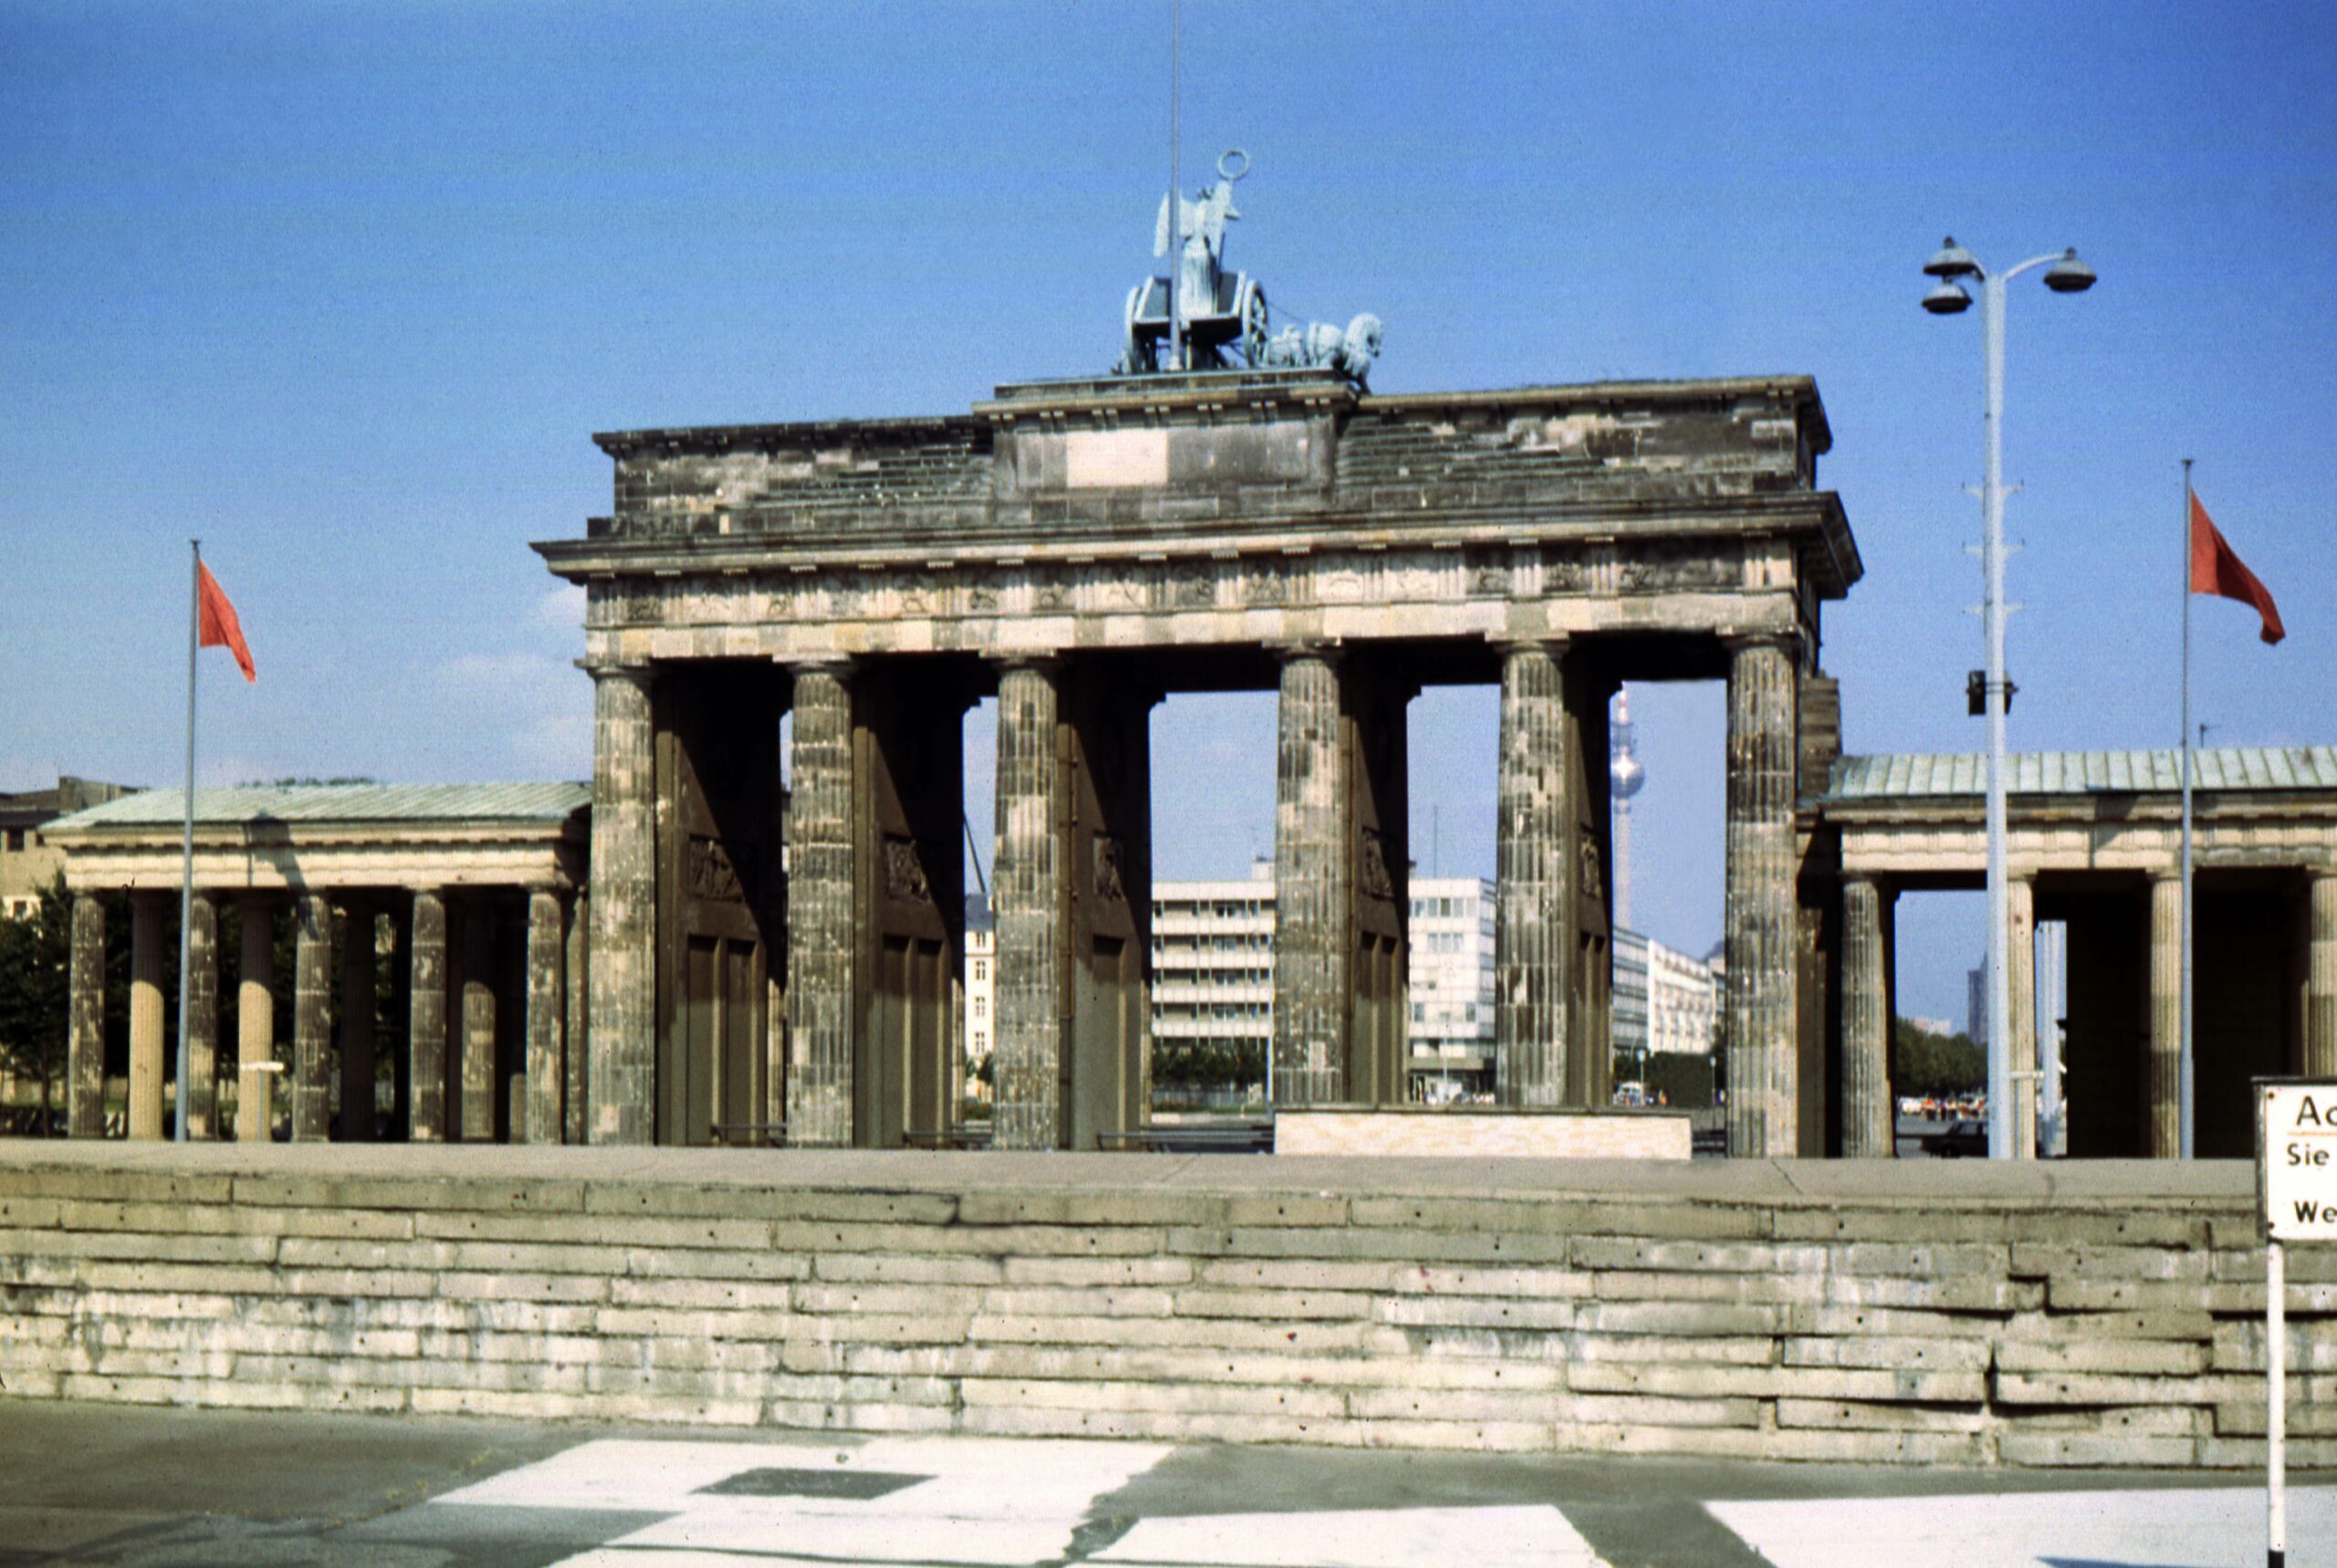 Berlin 1973: Blick auf die Mauer und das Brandenburger Tor. Foto: Imago/Frank Sorge